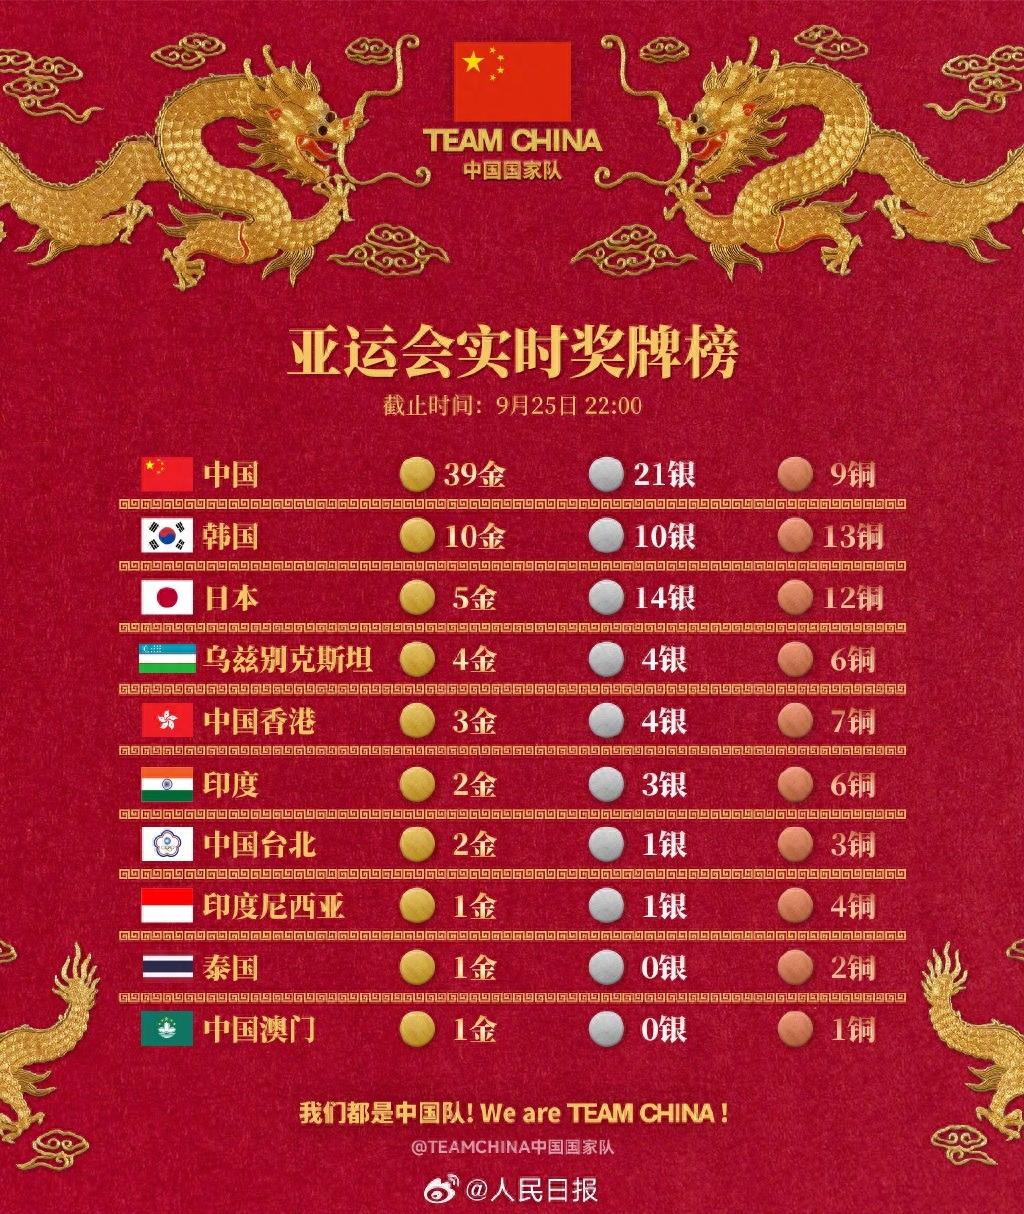 亚运会，比中国队2天39金更可贵的是：1、斗志；2、感情